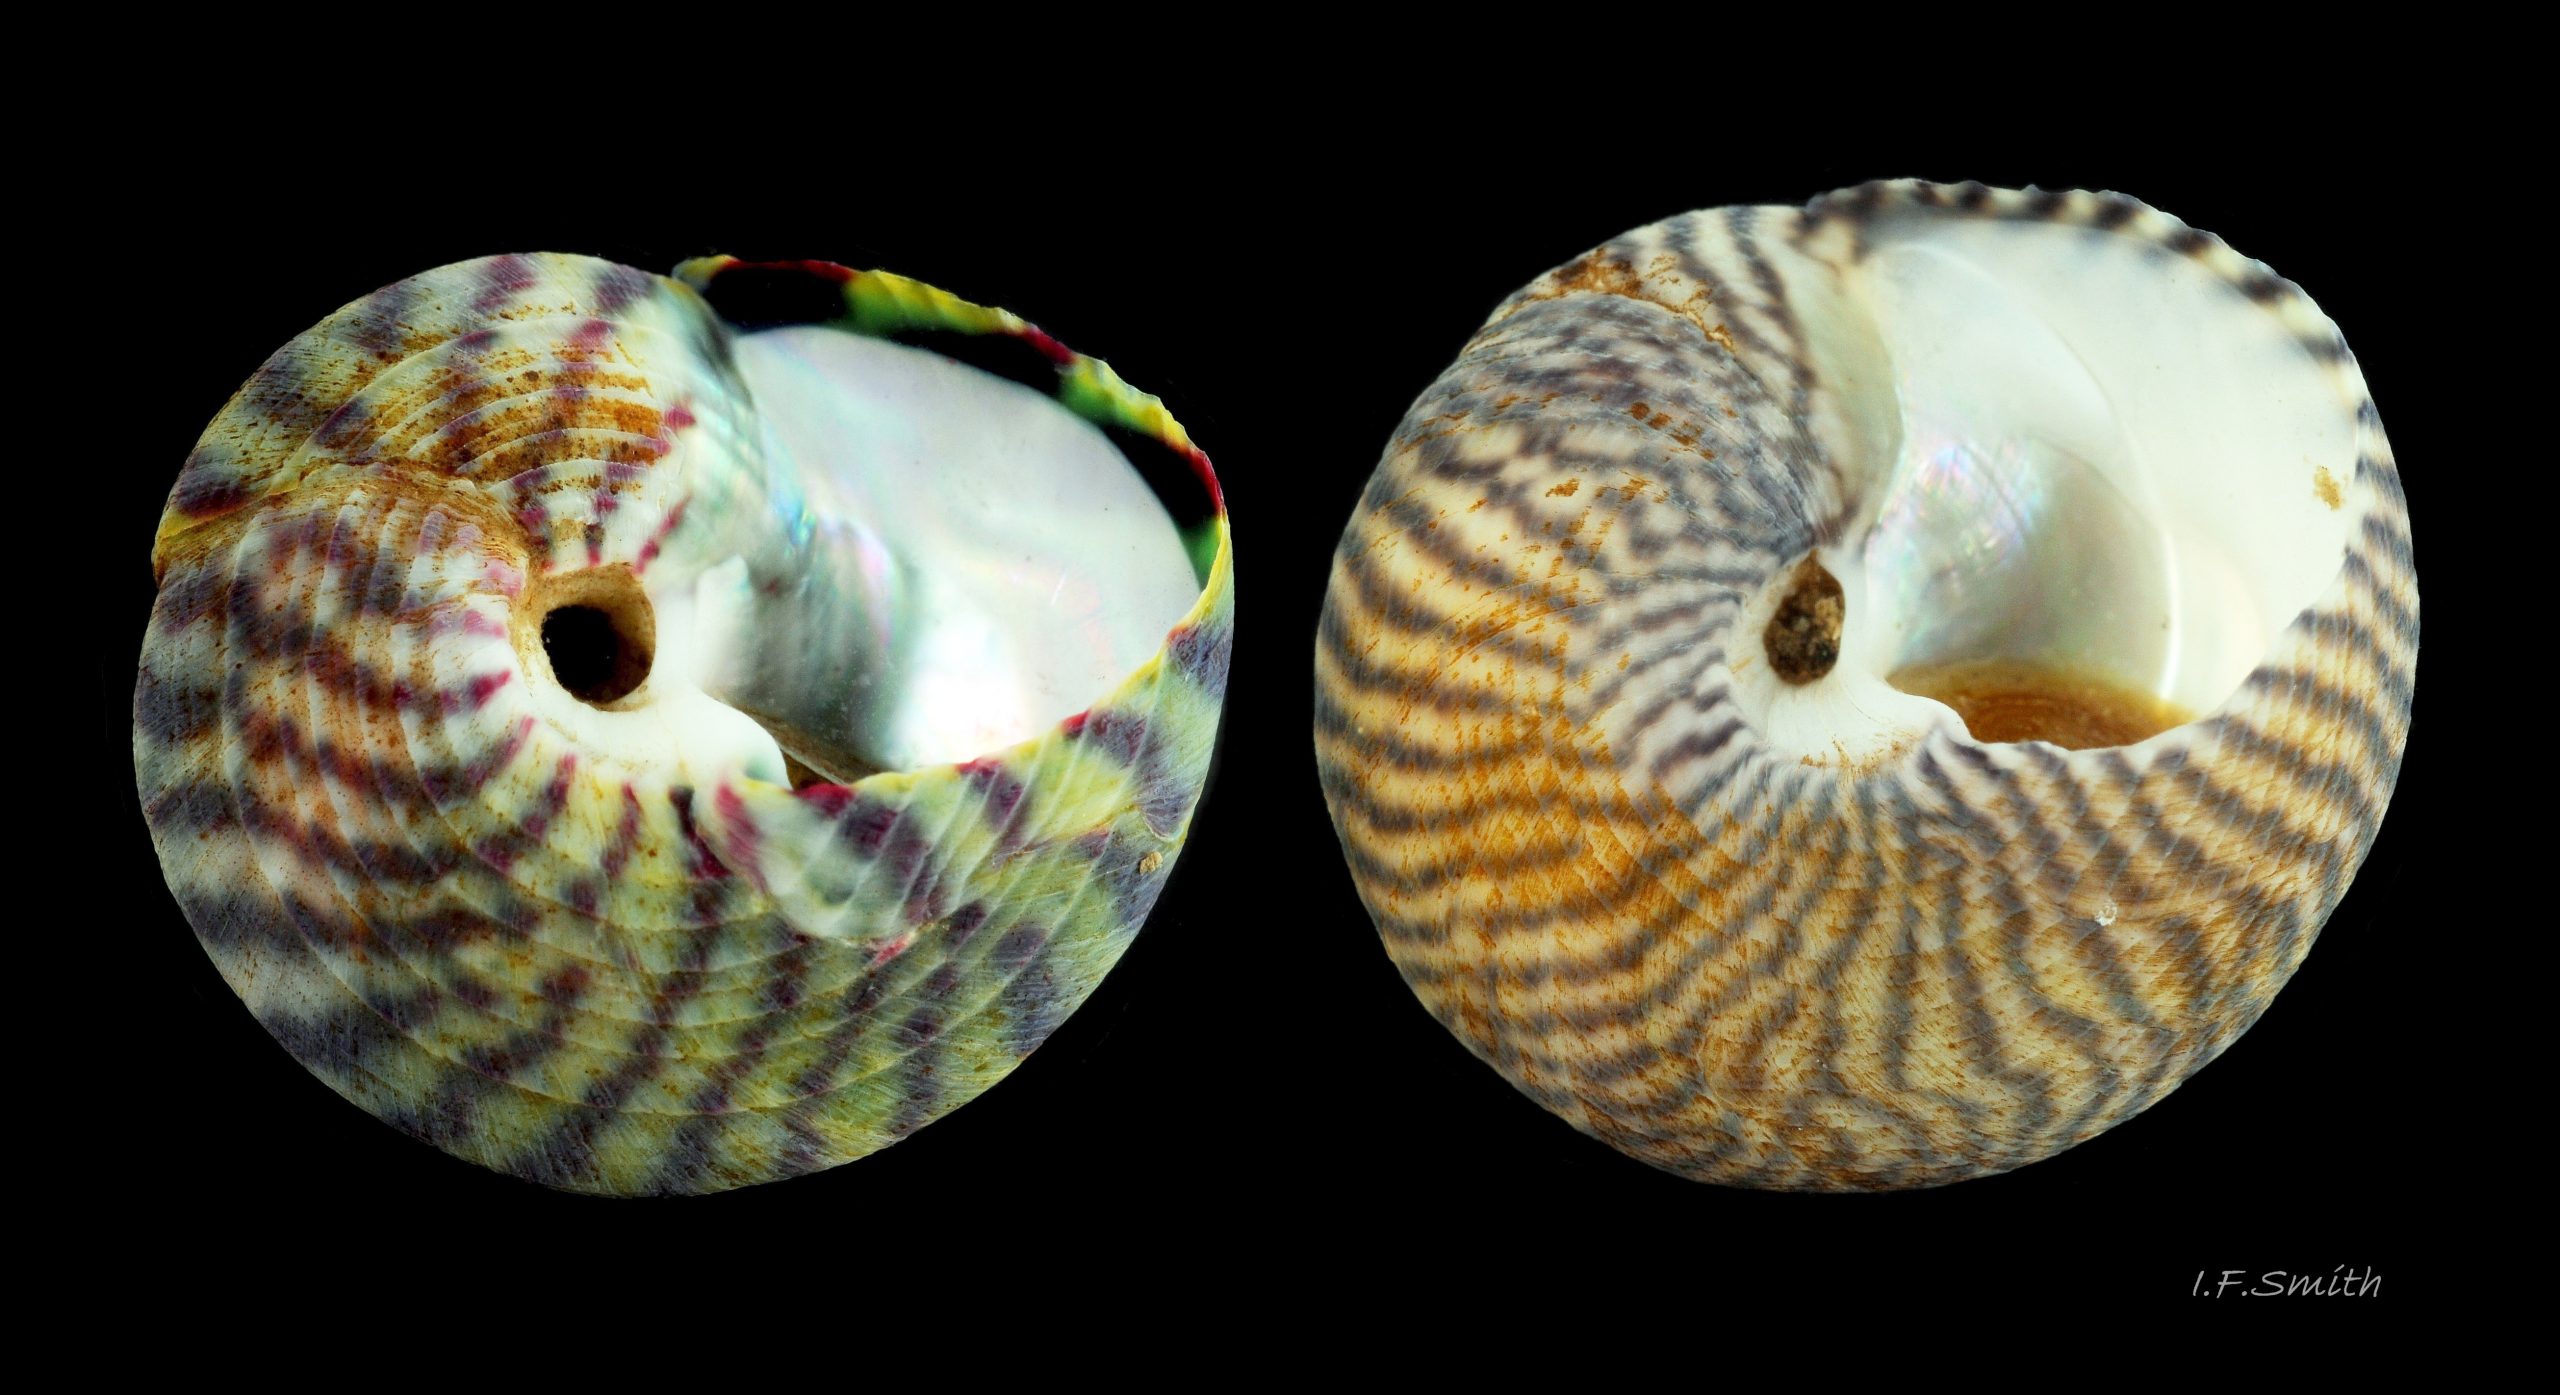 25 Comparison of medium-sized S. umbilicalis and S. cineraria. Aug. 2013. Menai Strait, Wales.